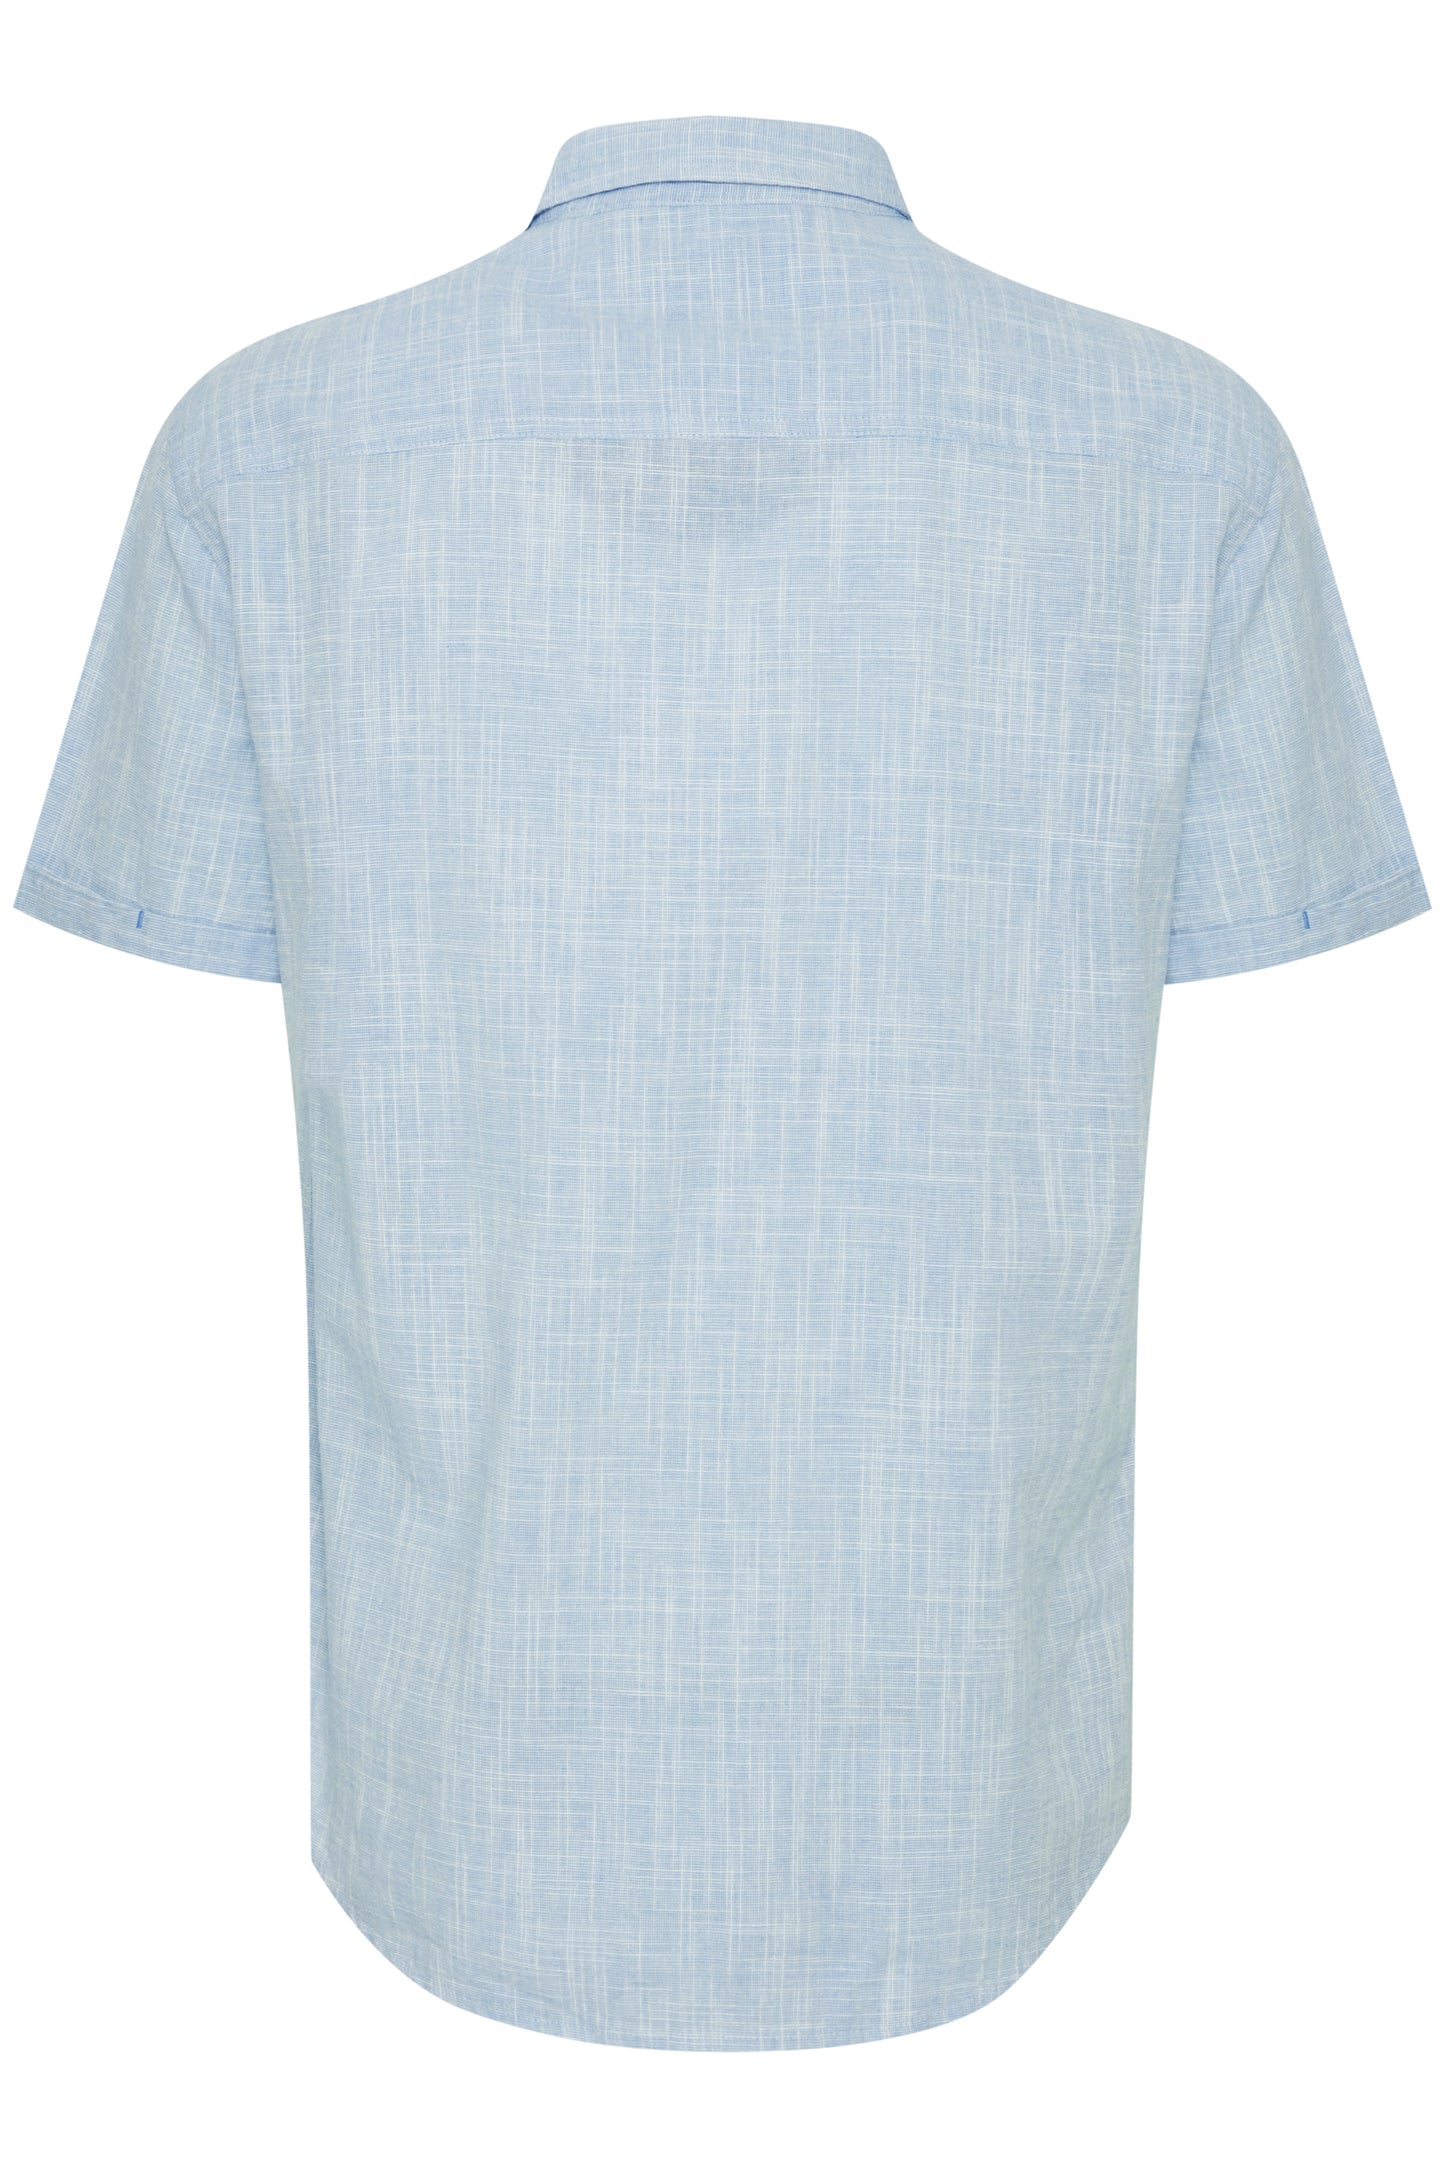 BigMens Pure Cotton Linen-Look Shirt - Aqua Sky